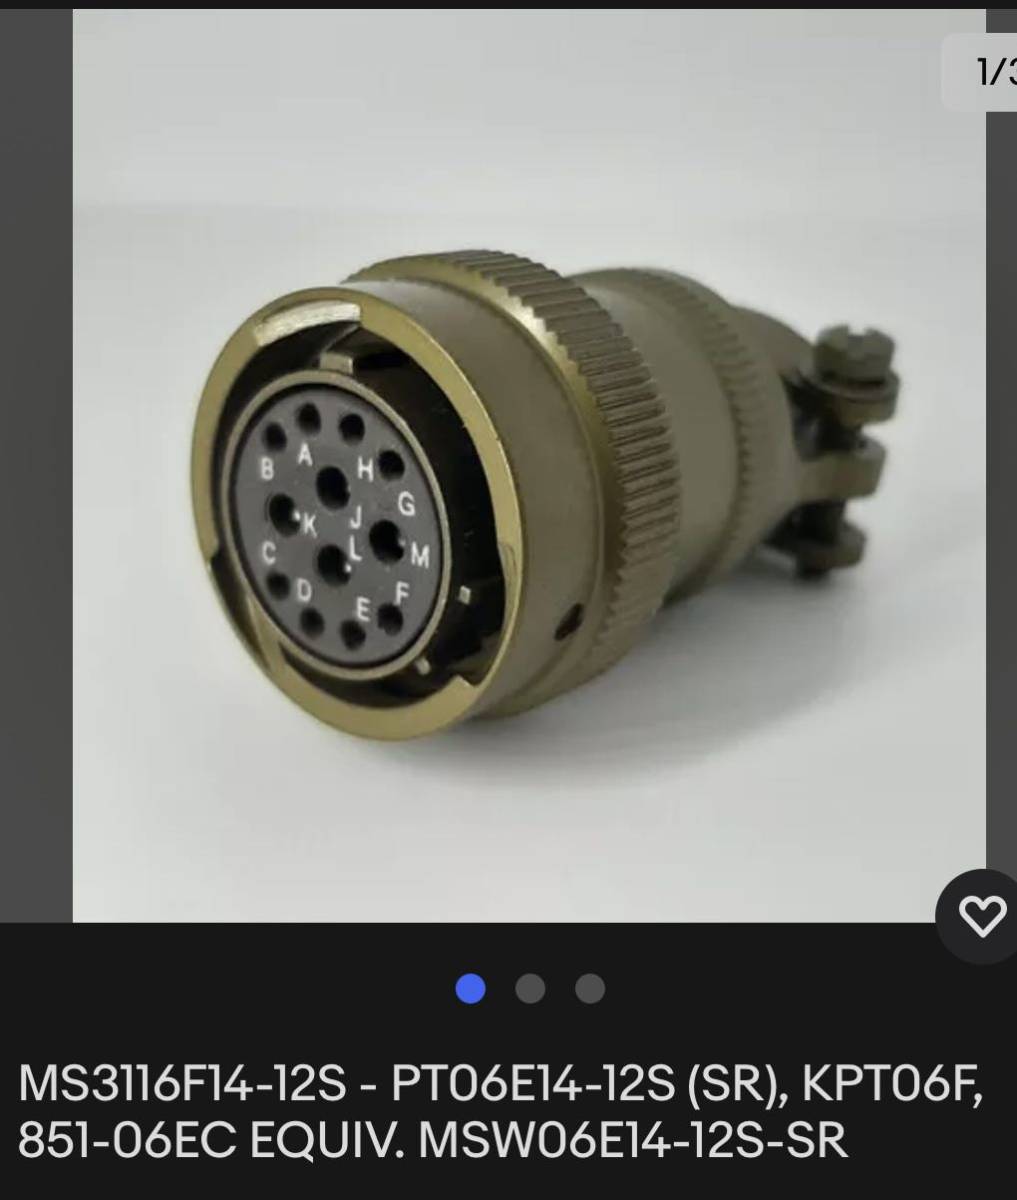 MS3116F14-12S - PT06E14-12S (SR), KPT06F, 851-06EC MSW06E14-12S-SR コネクター未使用